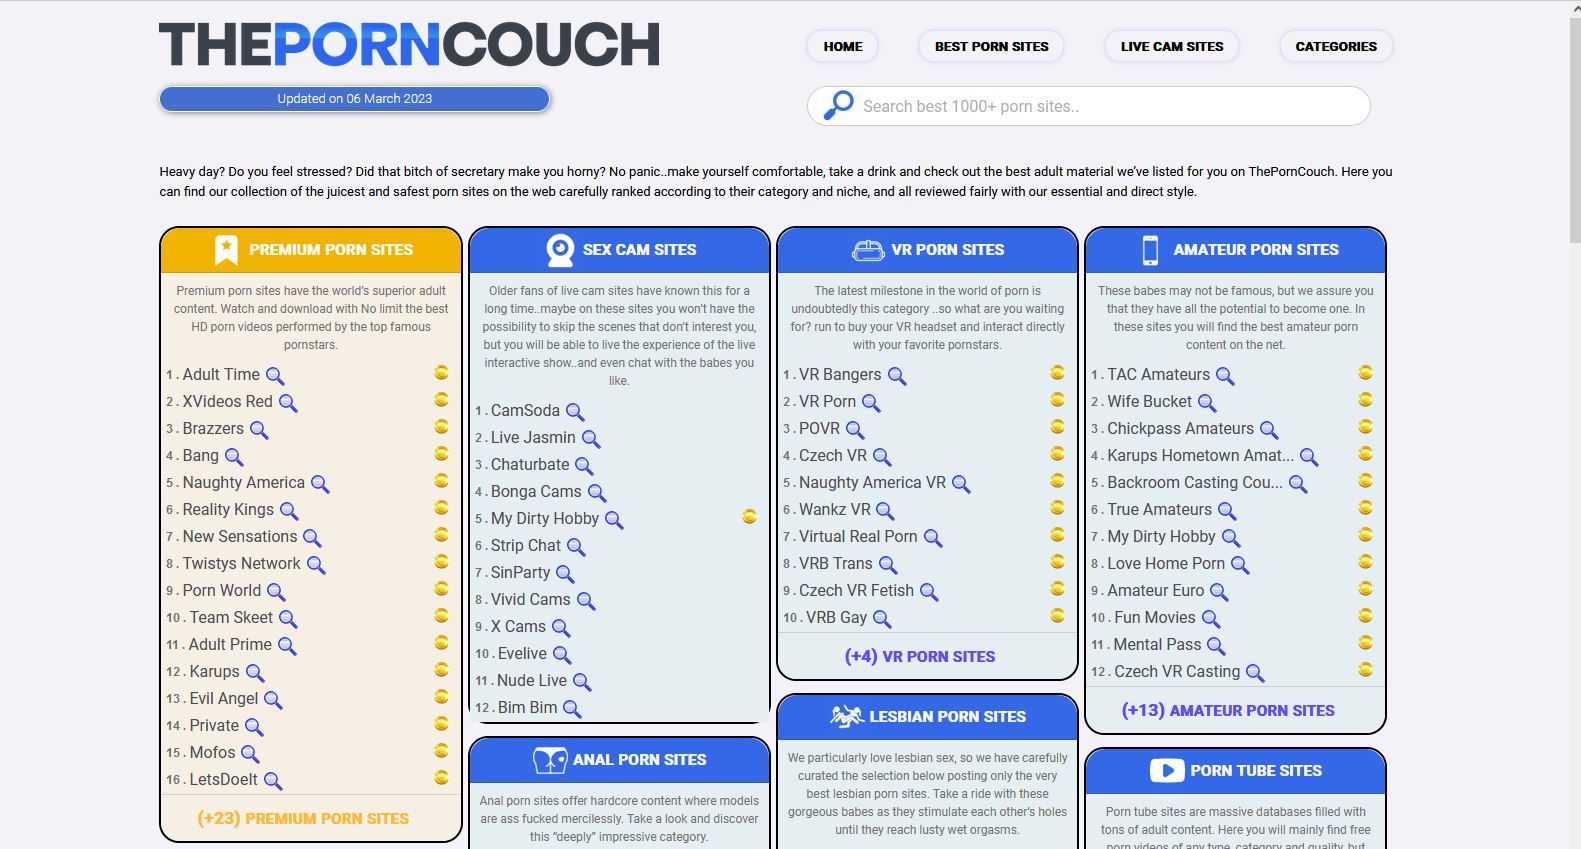 ThePornCouch गुणवत्तापूर्ण पोर्न साइटें ढूंढने का एक वैकल्पिक स्रोत है